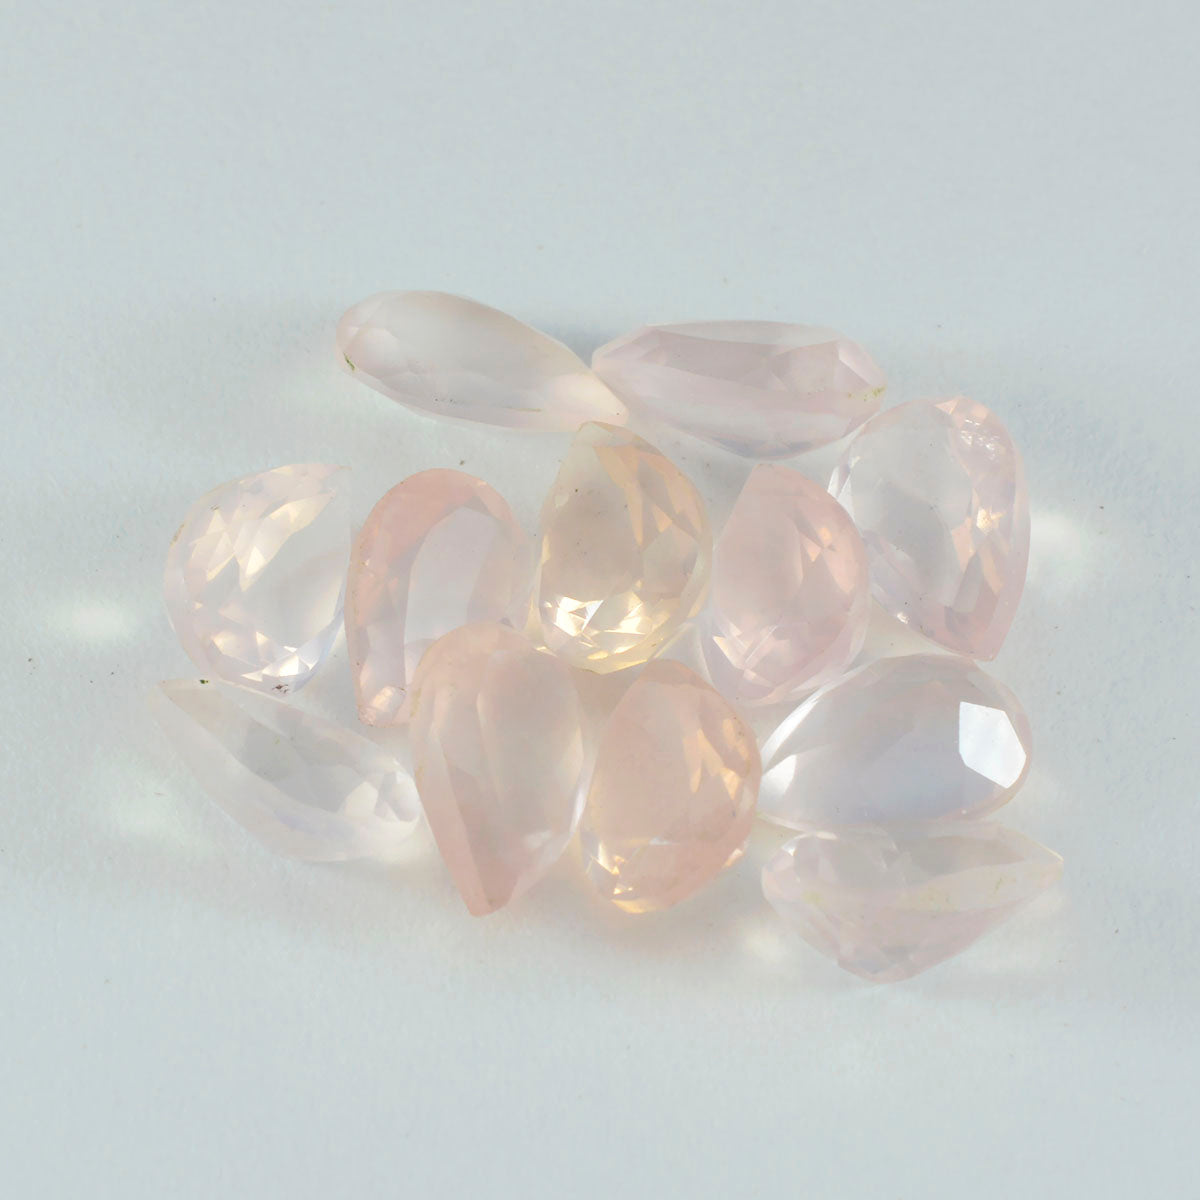 riyogems 1 шт. розовый кварц ограненный 7x10 мм грушевидной формы красивый качественный свободный драгоценный камень